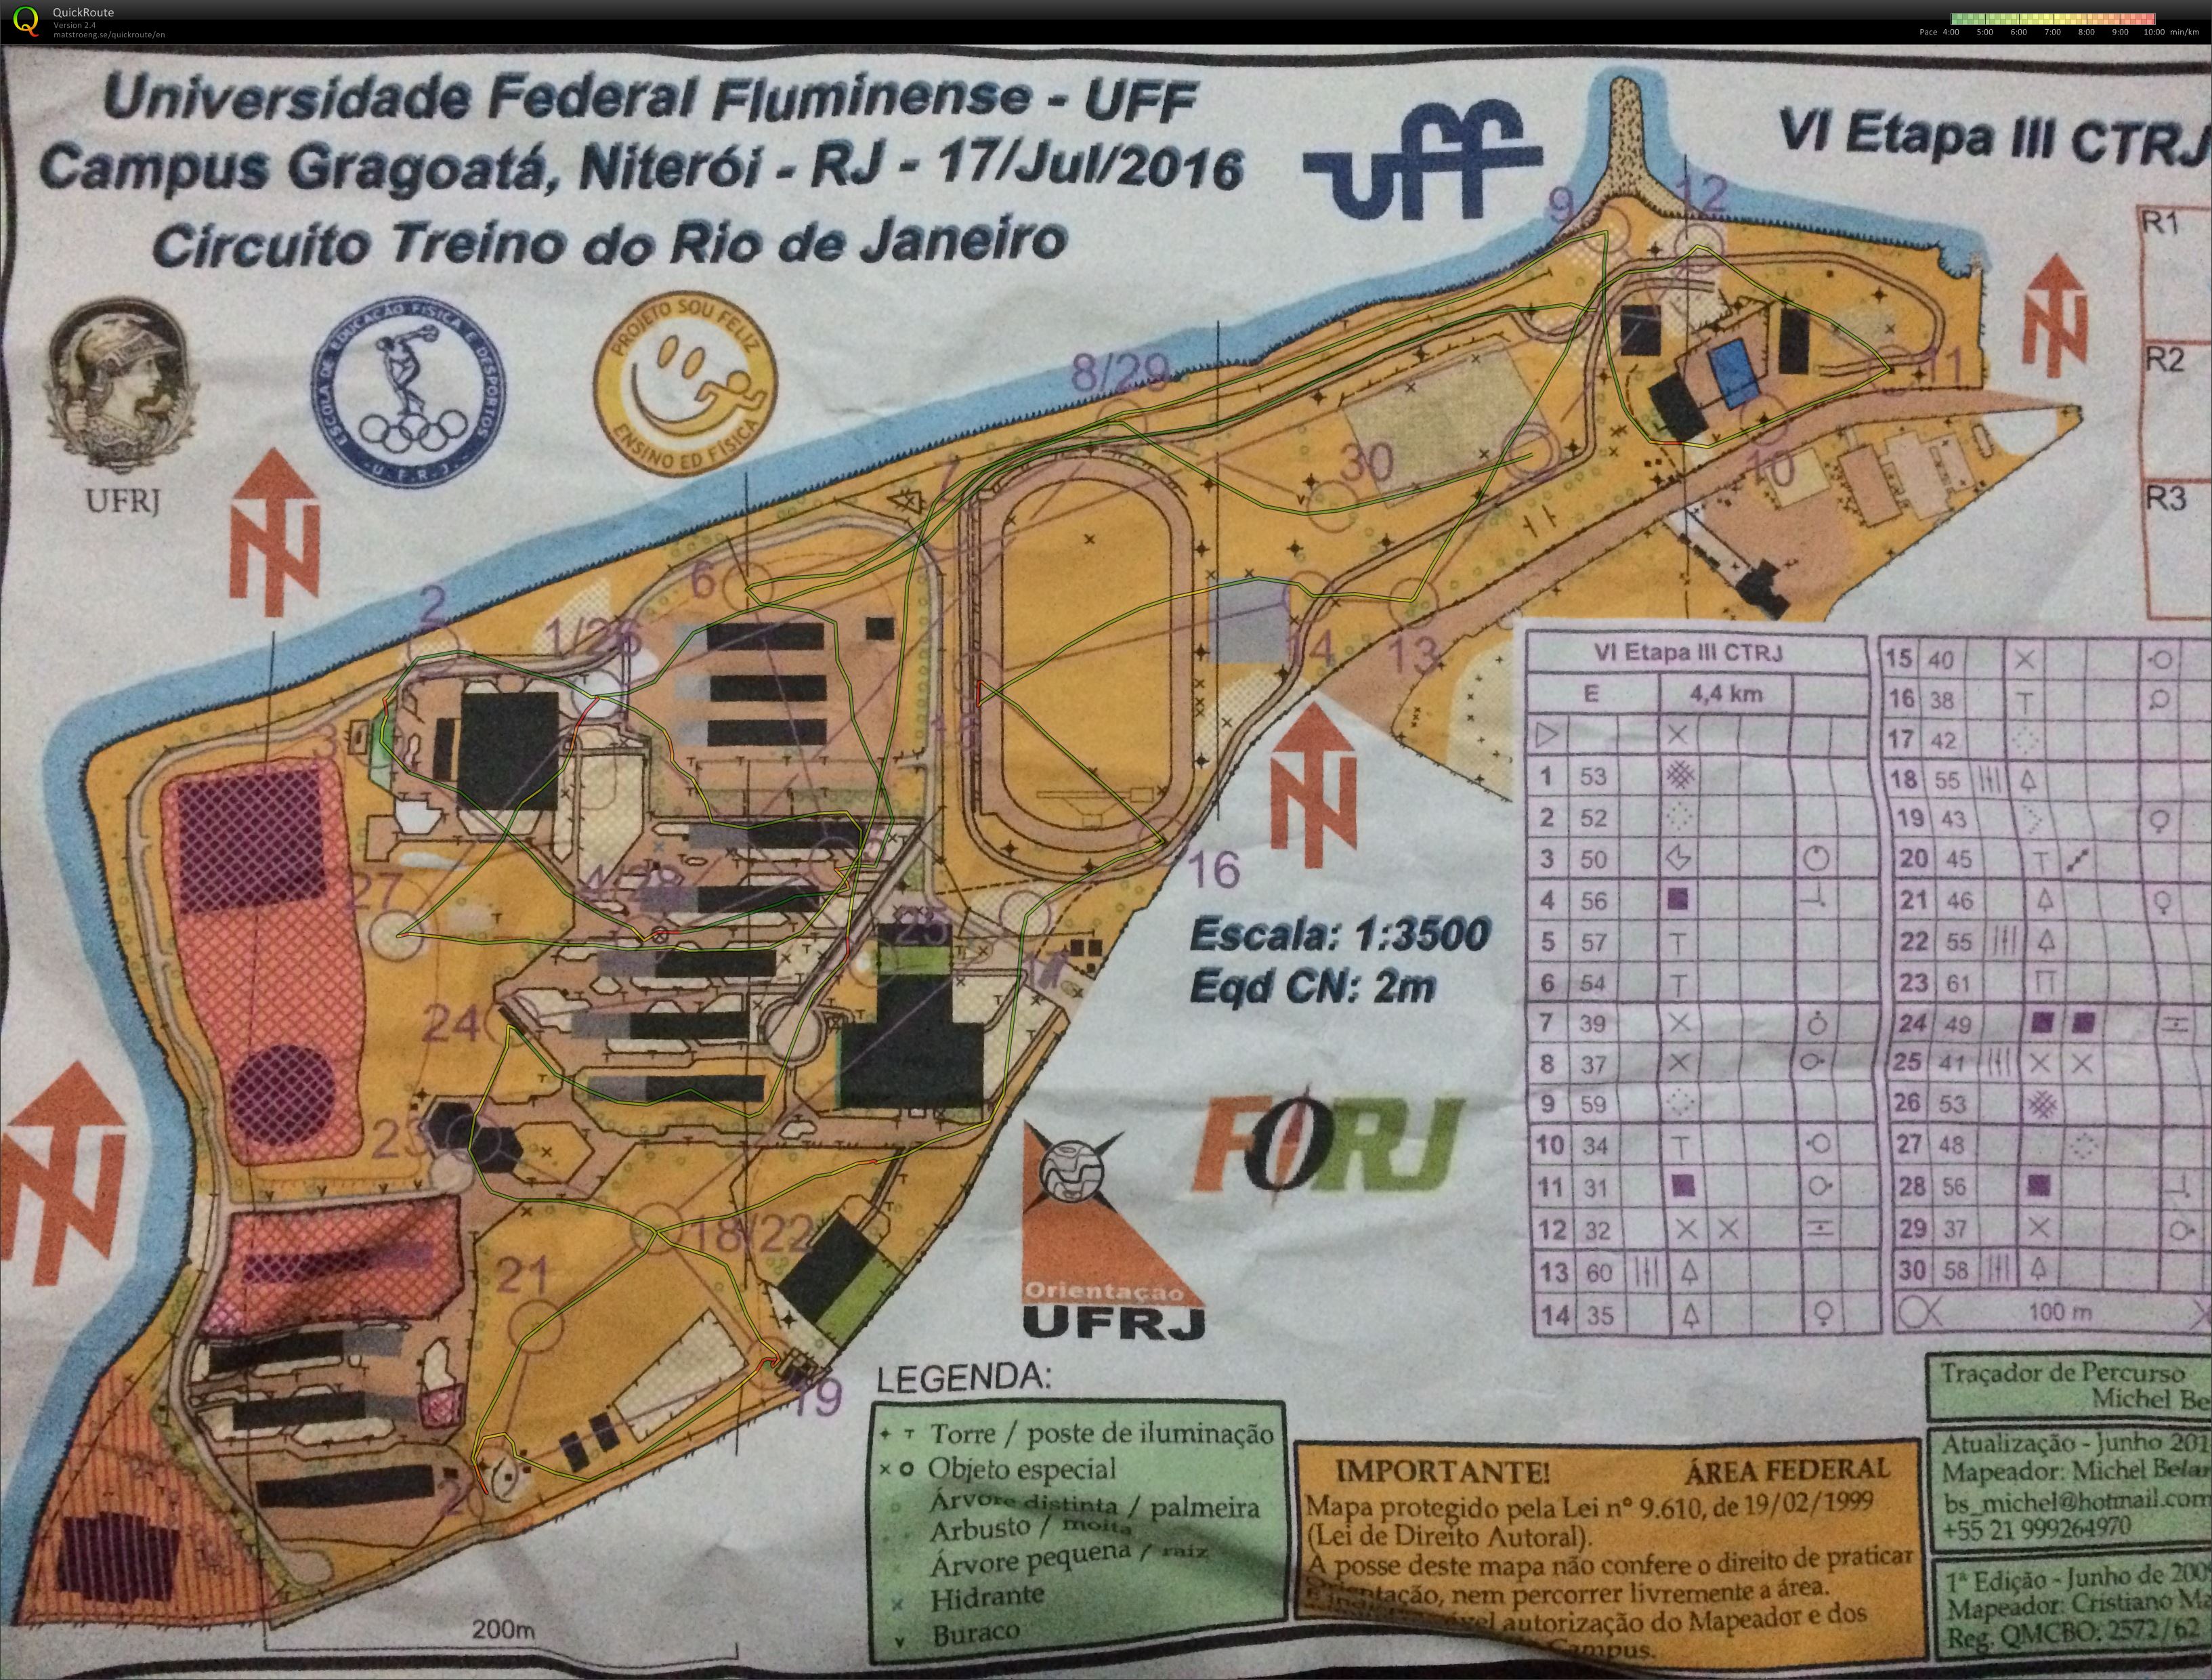 VI Etapa III, Circuito Treino do Rio de Janeiro (2016-07-17)